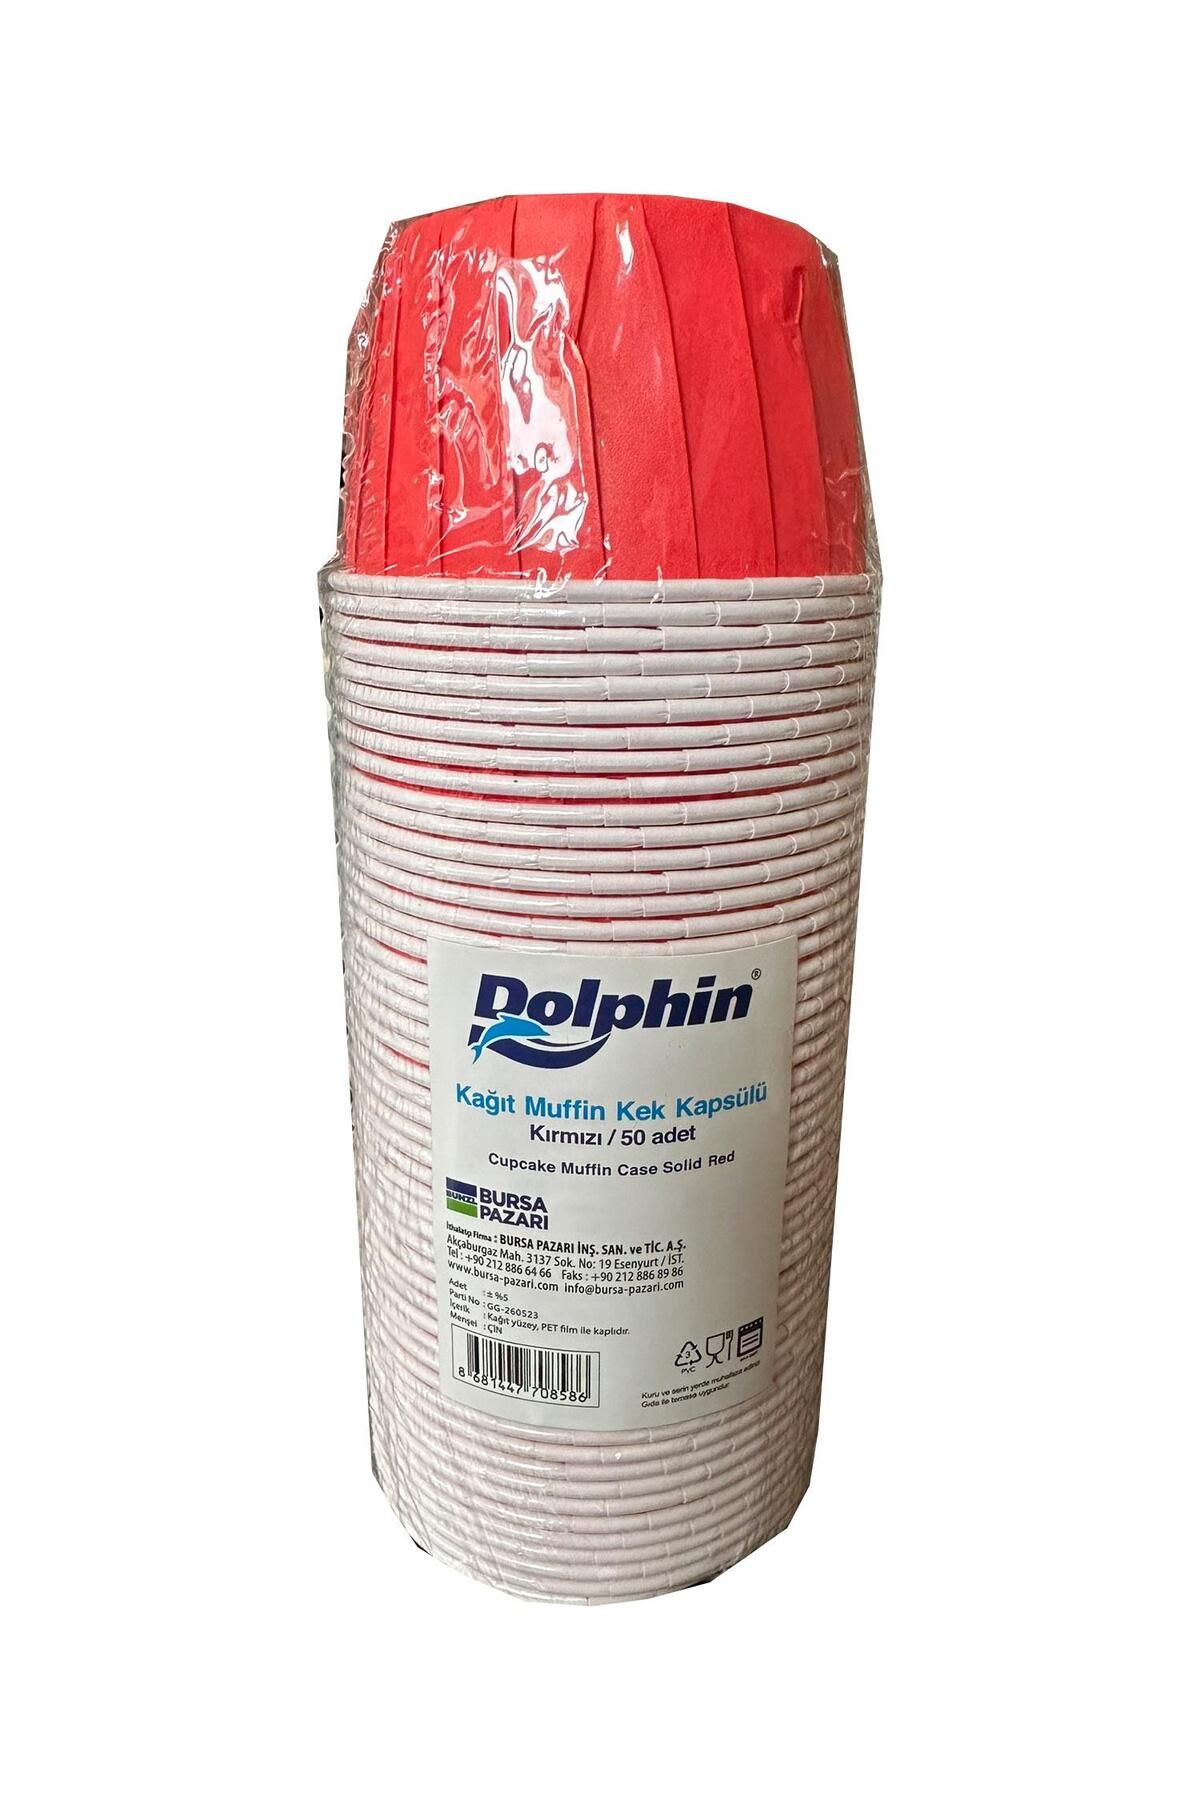 Dolphin Muffin Kağıt Karton Kırmızı Cupcake Kek Kalıbı Kapsülü Kabı - 50 Adetlik 1 Paket